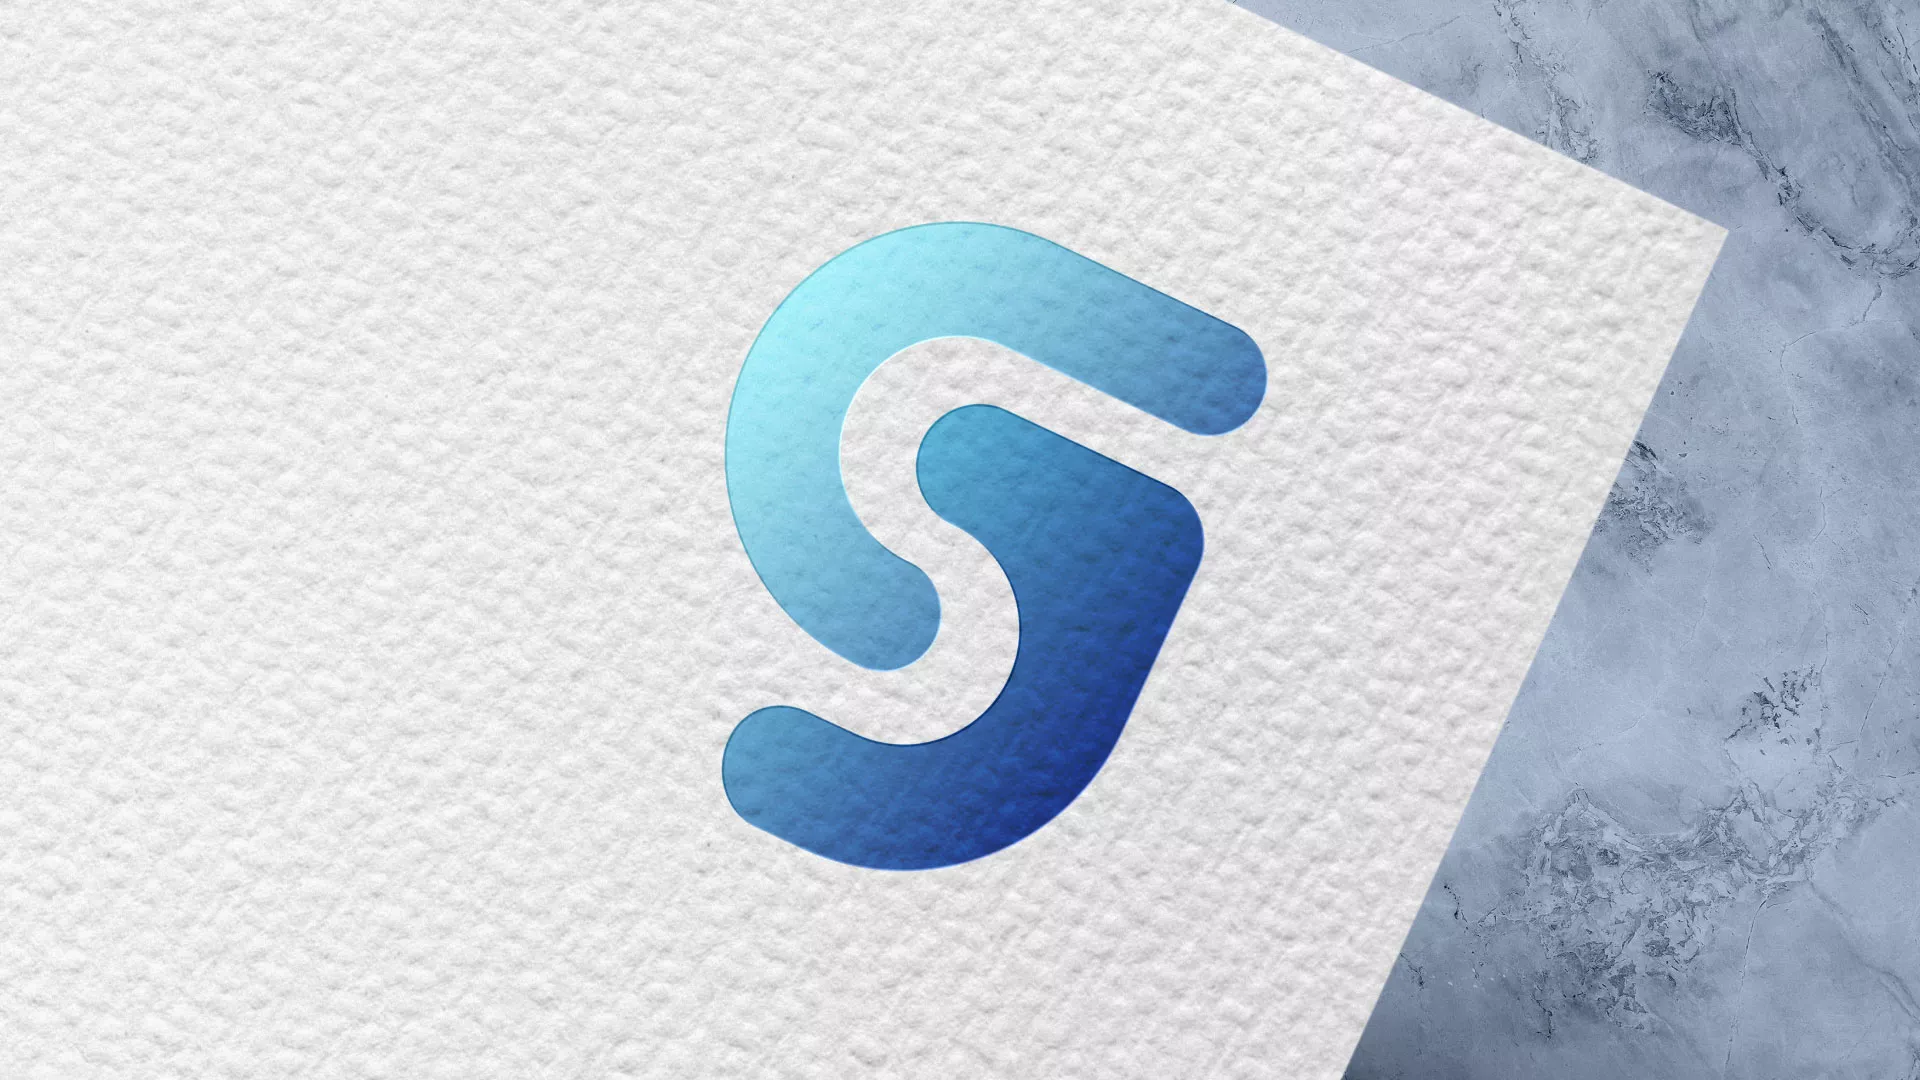 Разработка логотипа газовой компании «Сервис газ» в Щучье